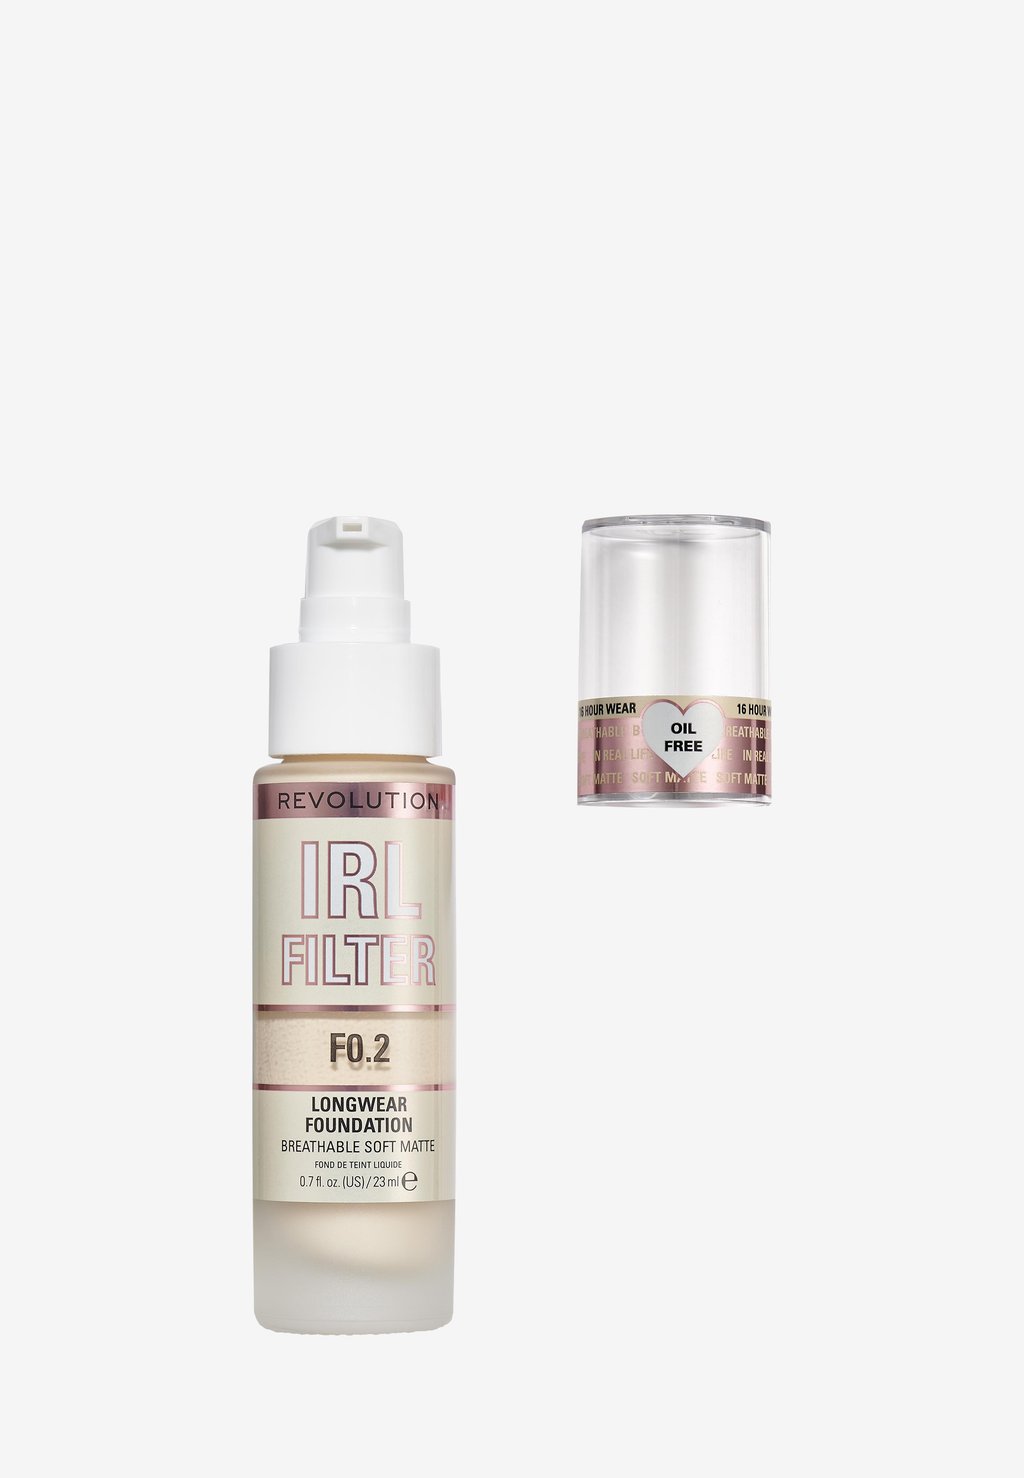 Тональная основа IRL FILTER LONGWEAR FOUNDATION Makeup Revolution, цвет f0.2